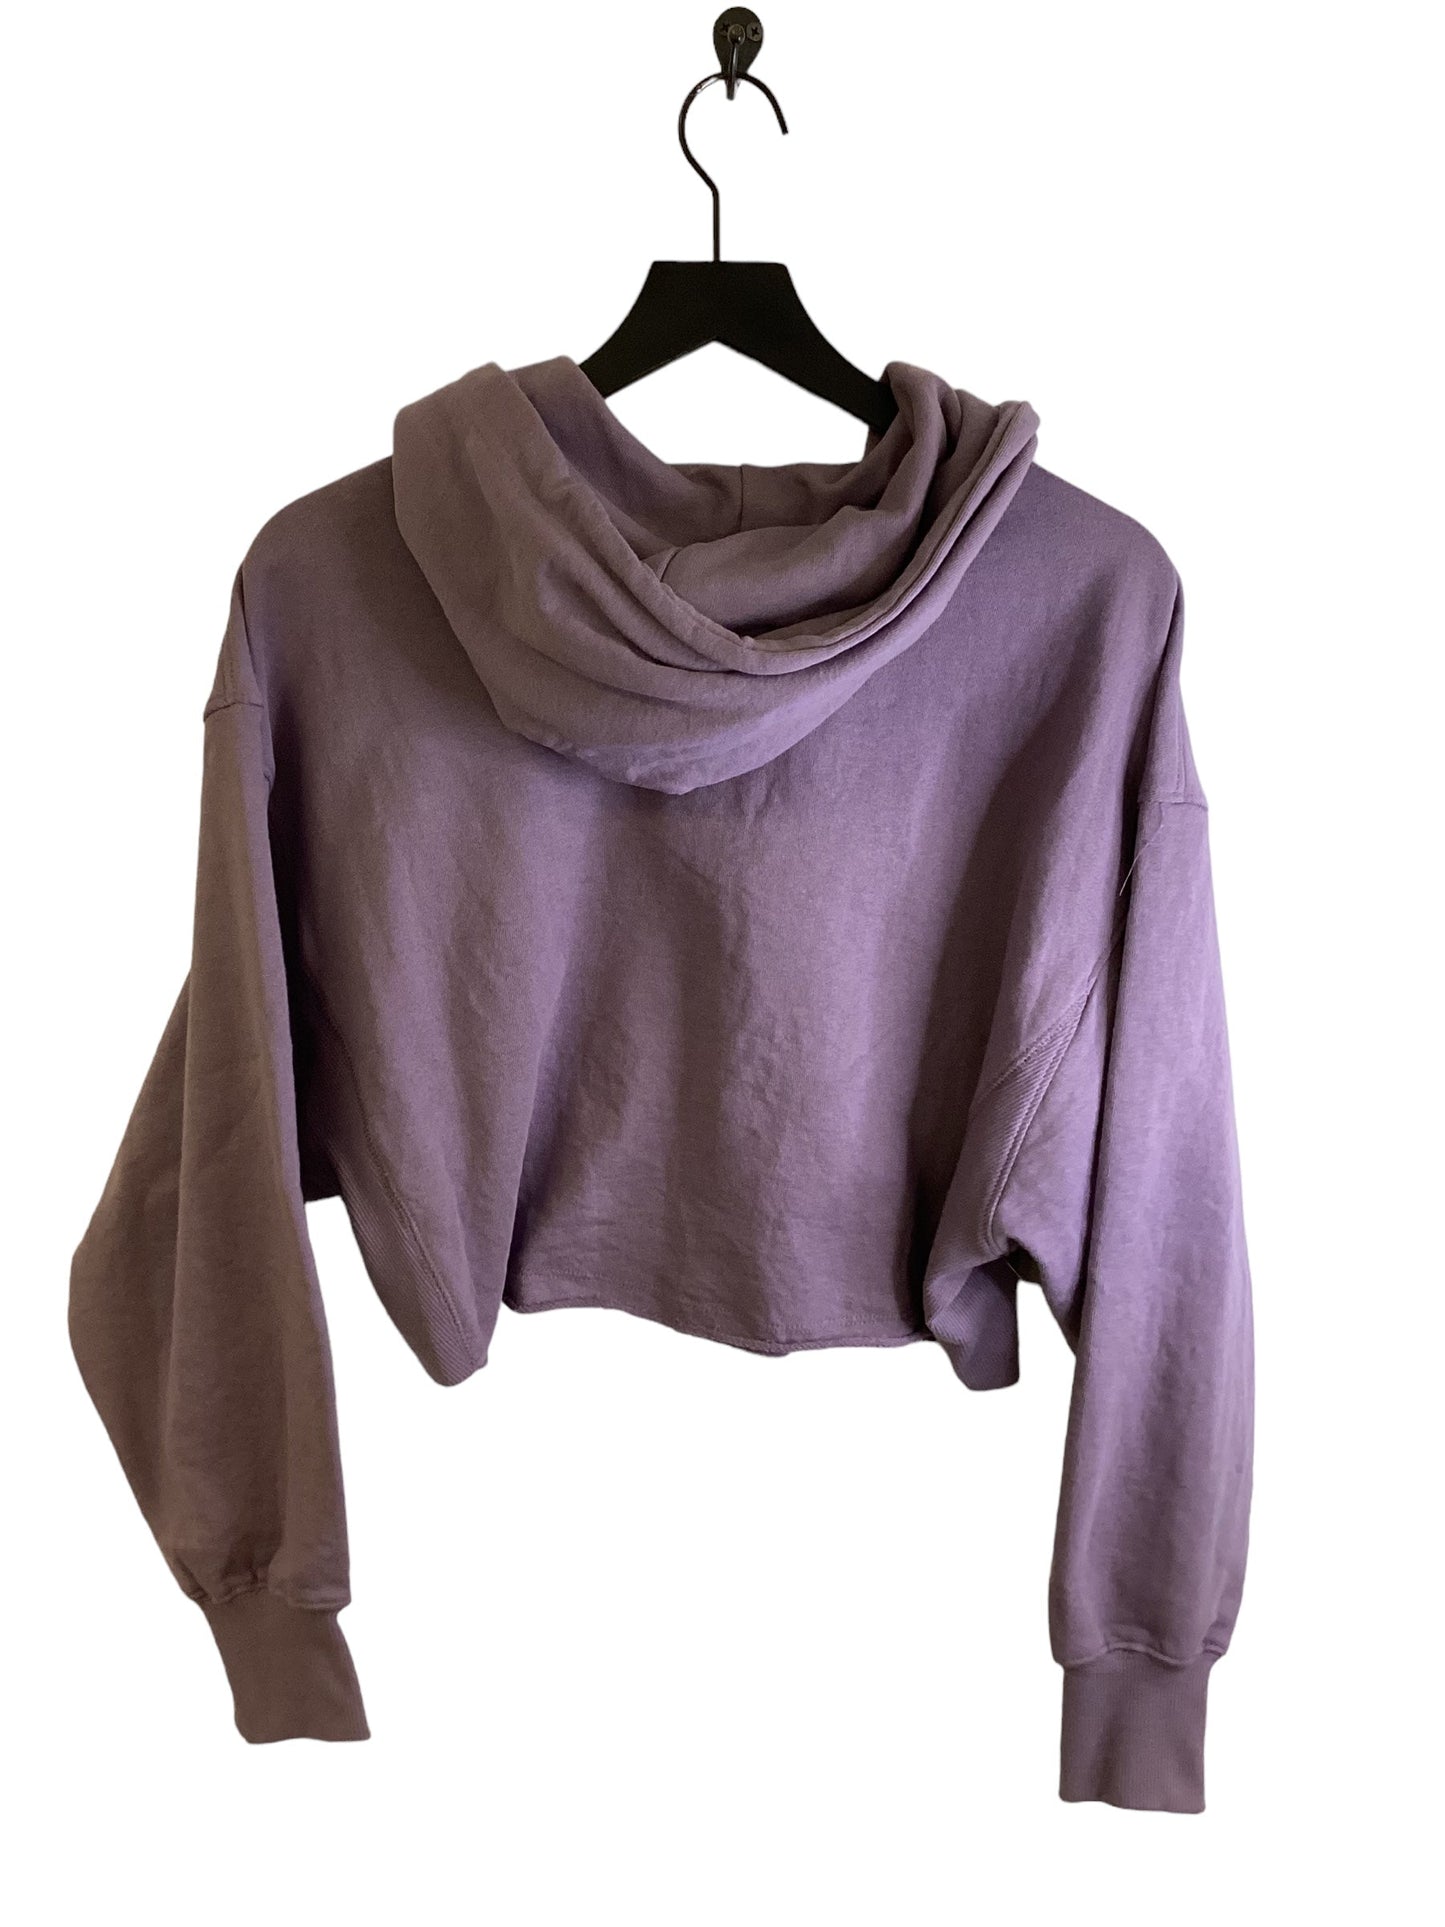 Sweatshirt Hoodie By Reflex  Size: M